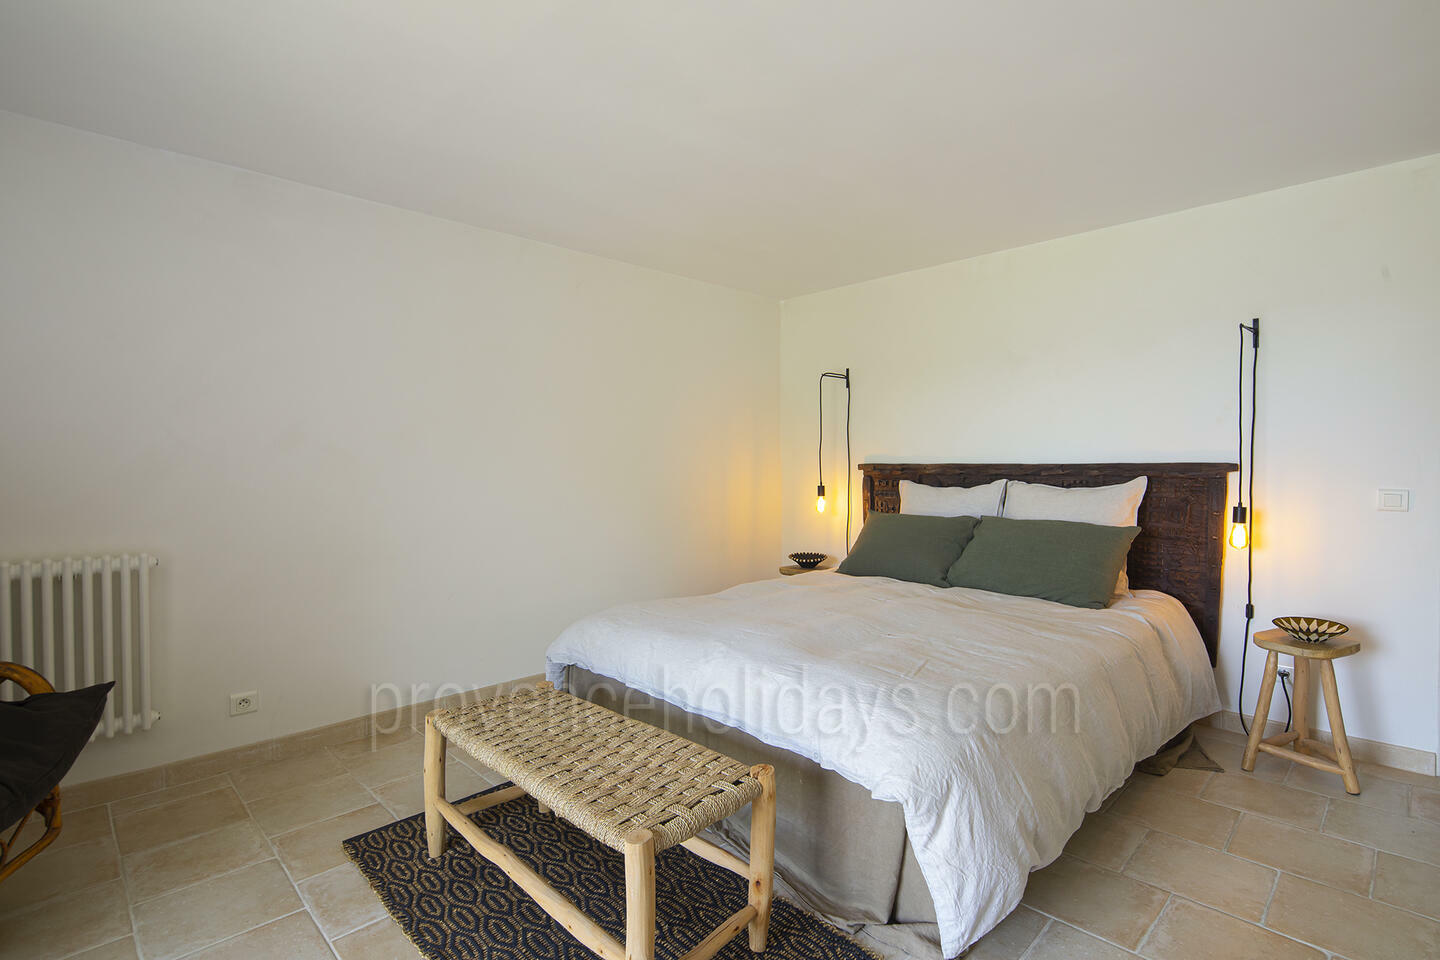 57 - Une Maison en Provence: Villa: Bedroom